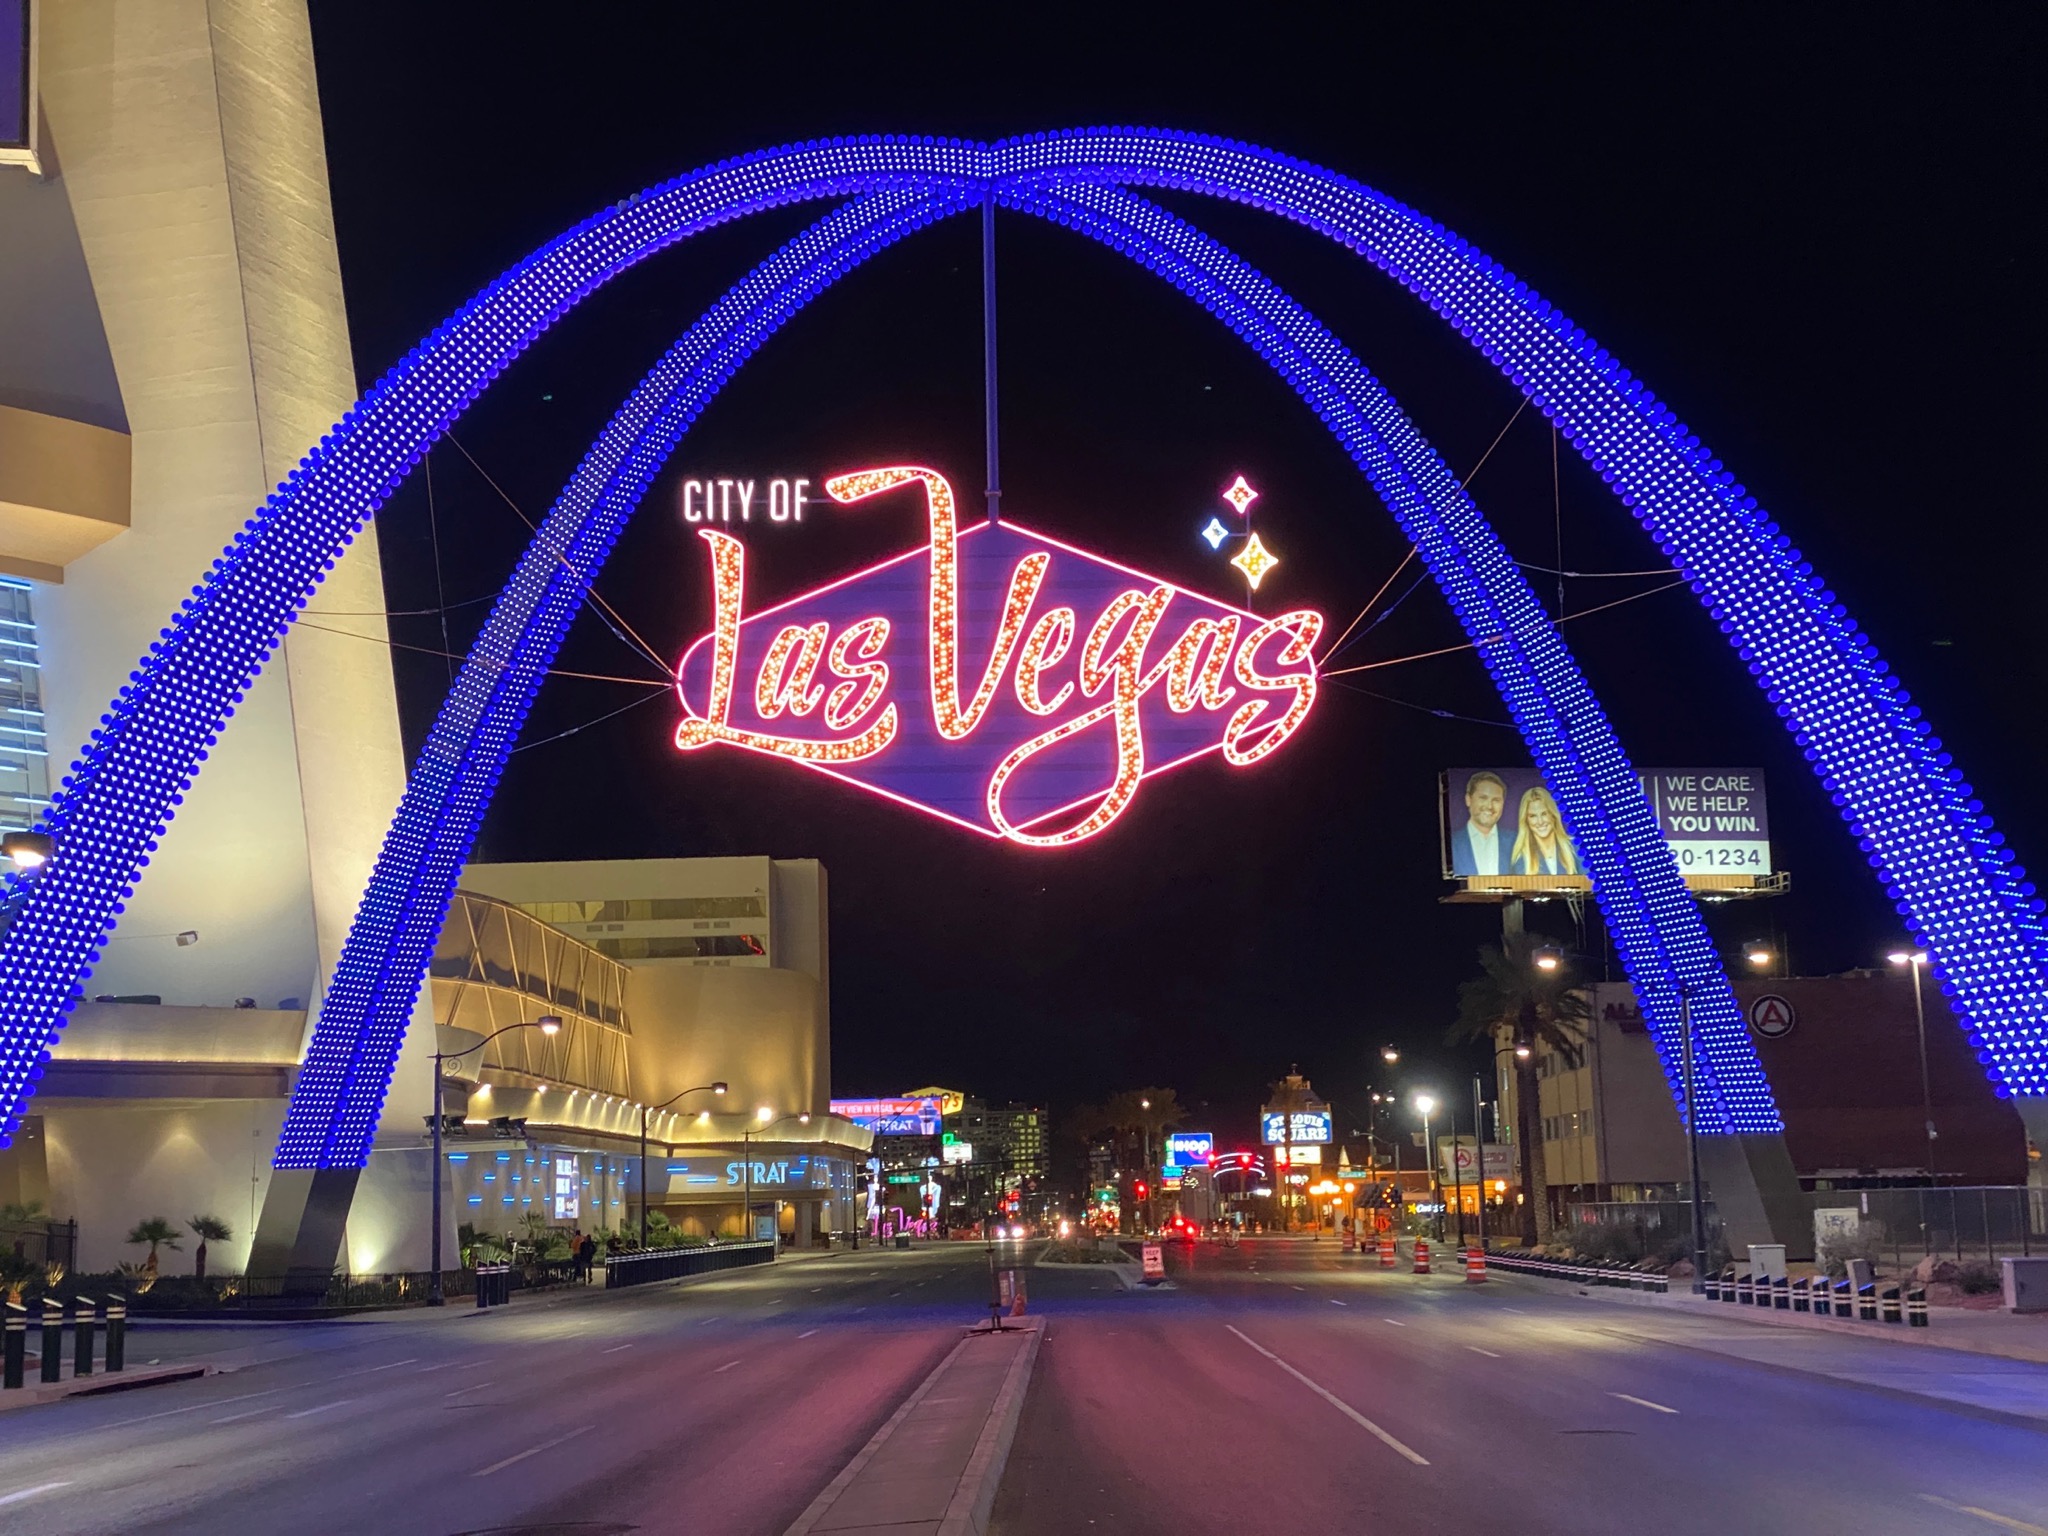 Las Vegas Blvd Gateway Arches in Las Vegas, NV